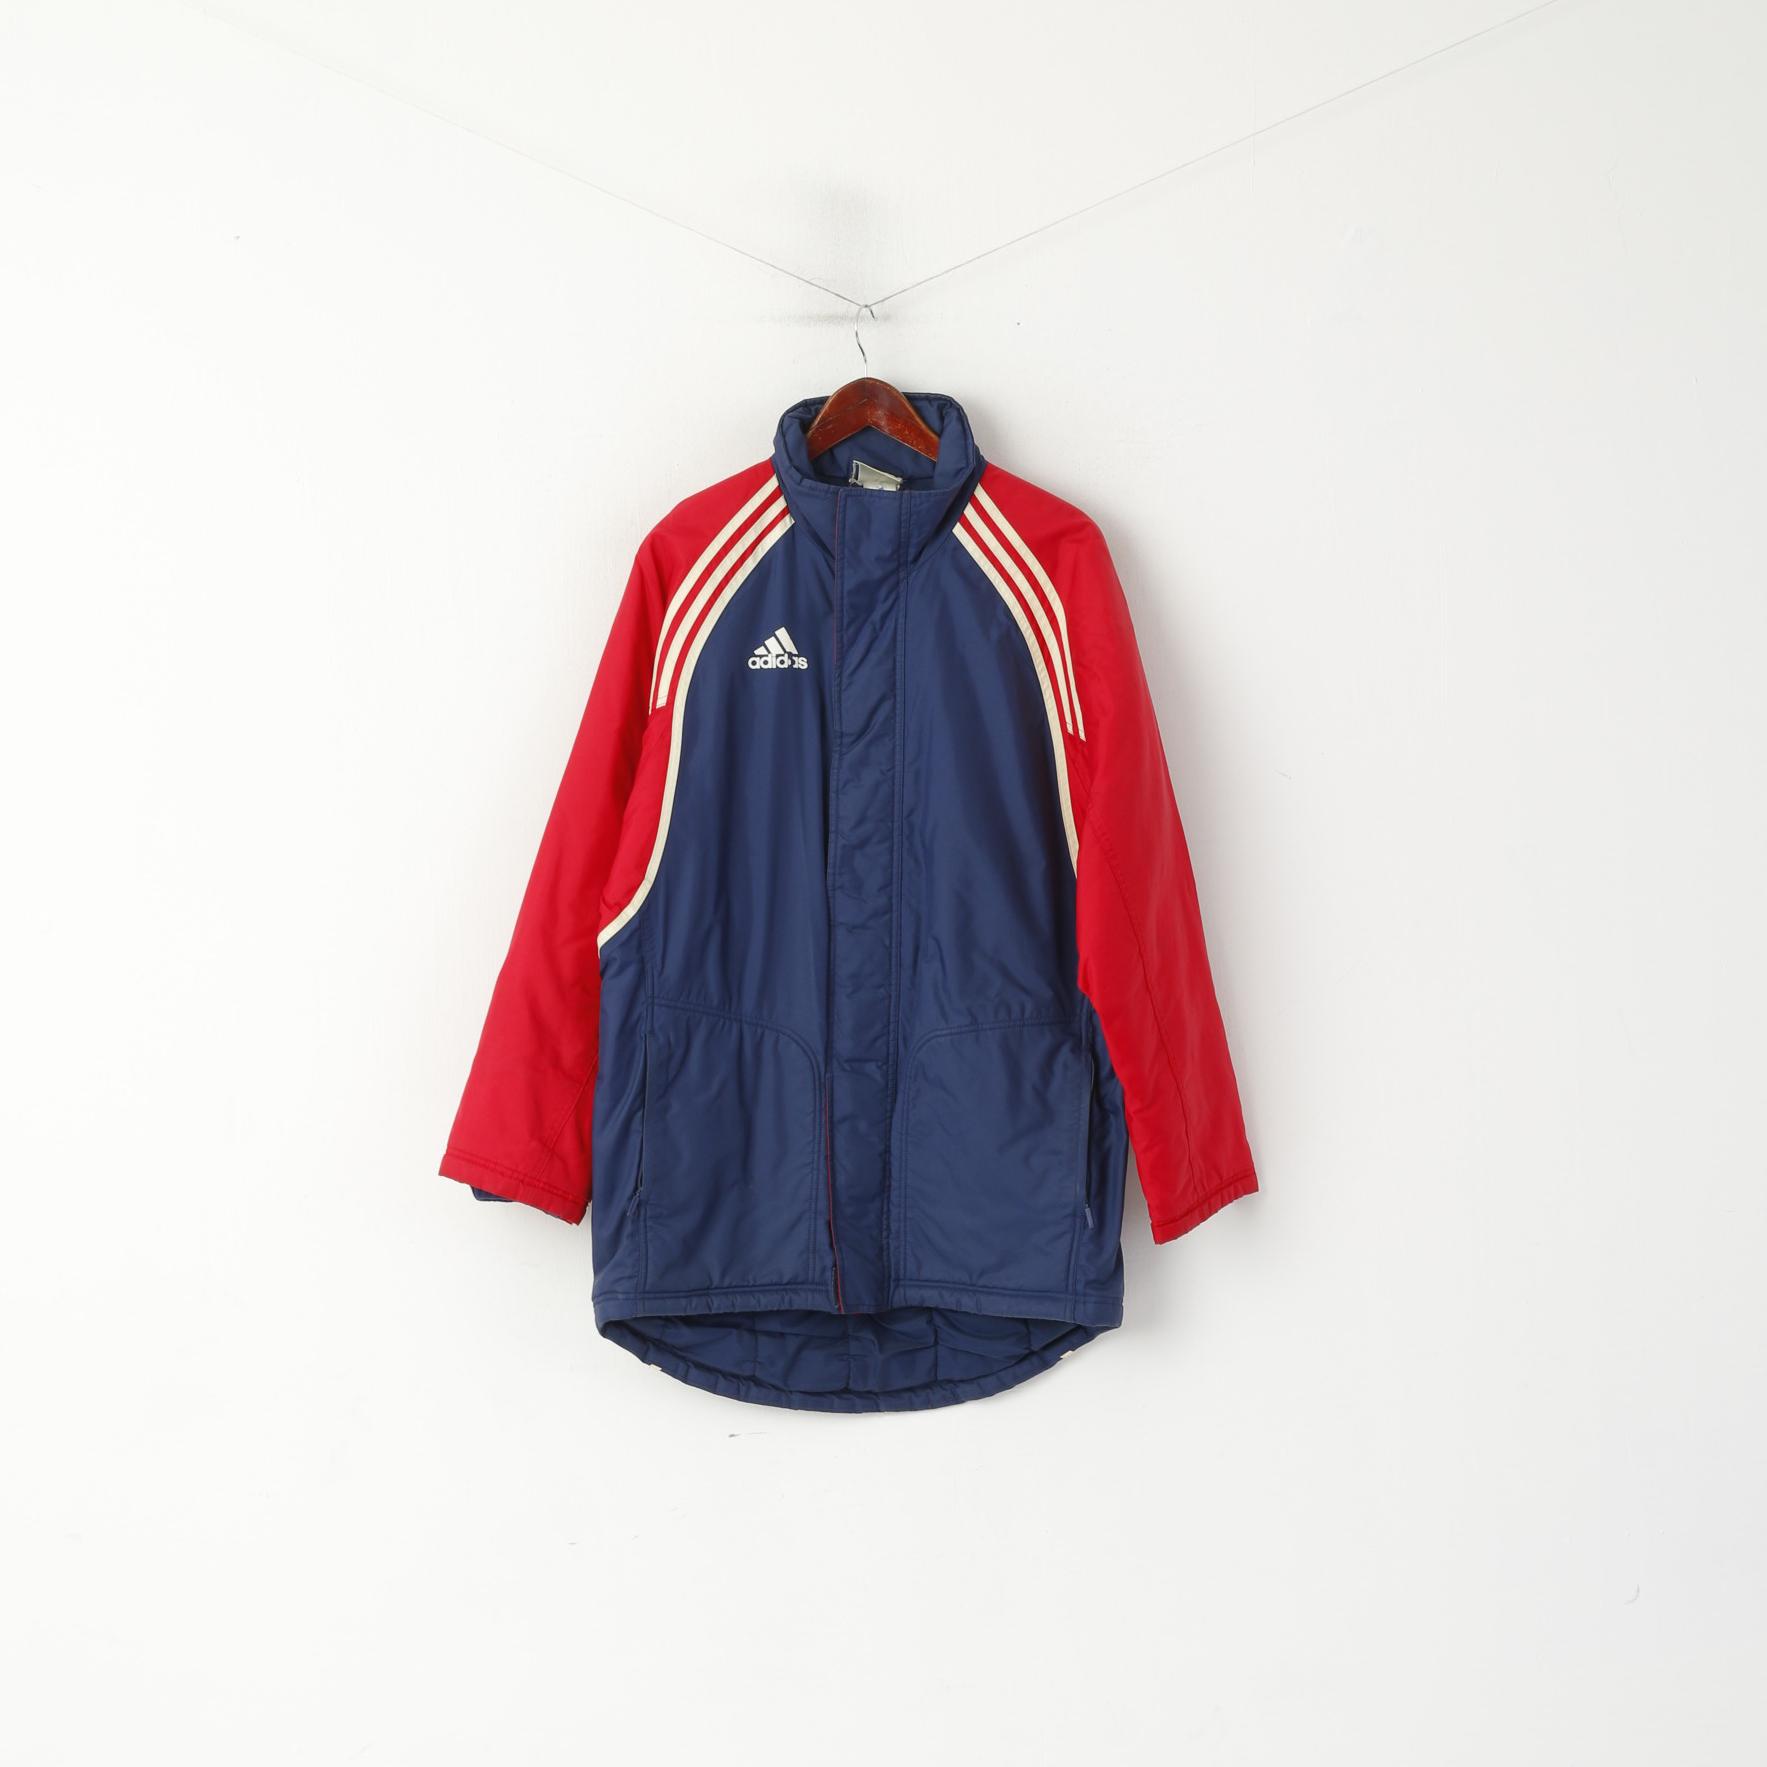 Adidas Men S 168 Jacket Vintage Blue Red Padded Nylon Waterproof